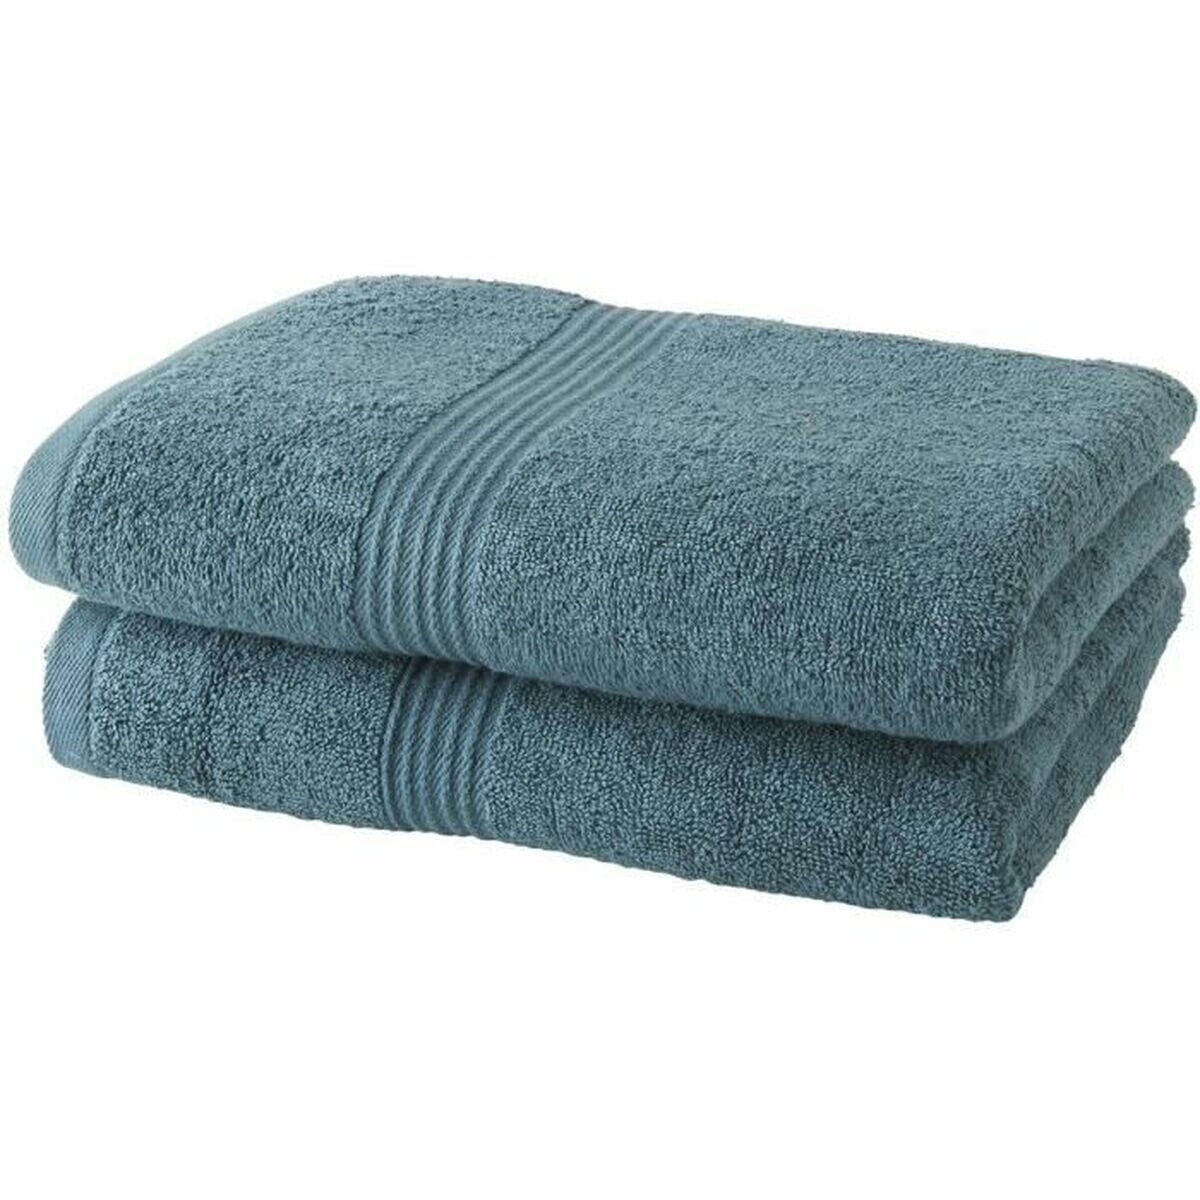 Towel set TODAY Grey 2 Pieces